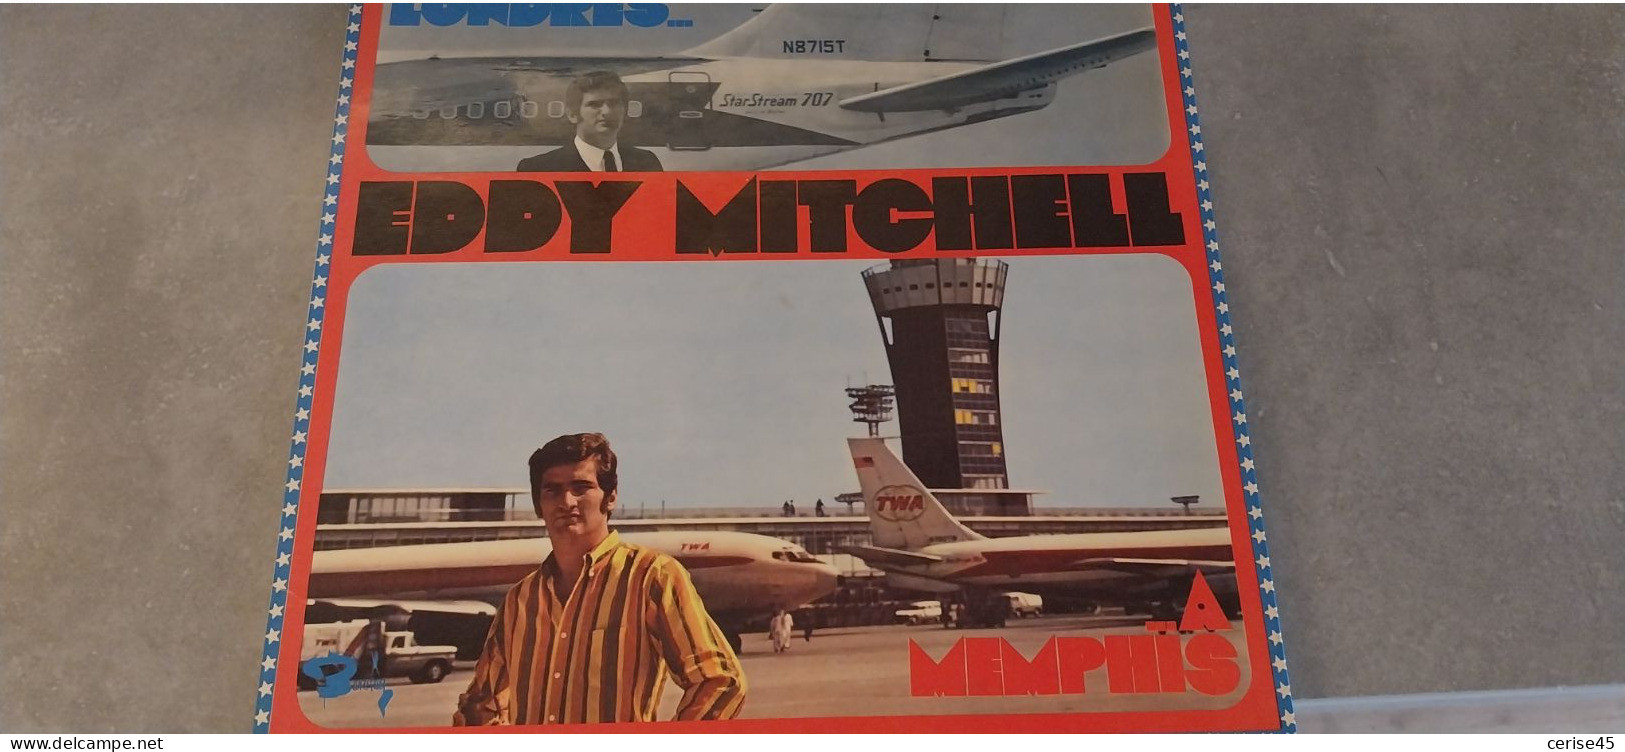 33 TOURS EDDY MITCHELL DE LONDRES A MENPHIS  ENREGISTRE EN 1967 - Other - French Music